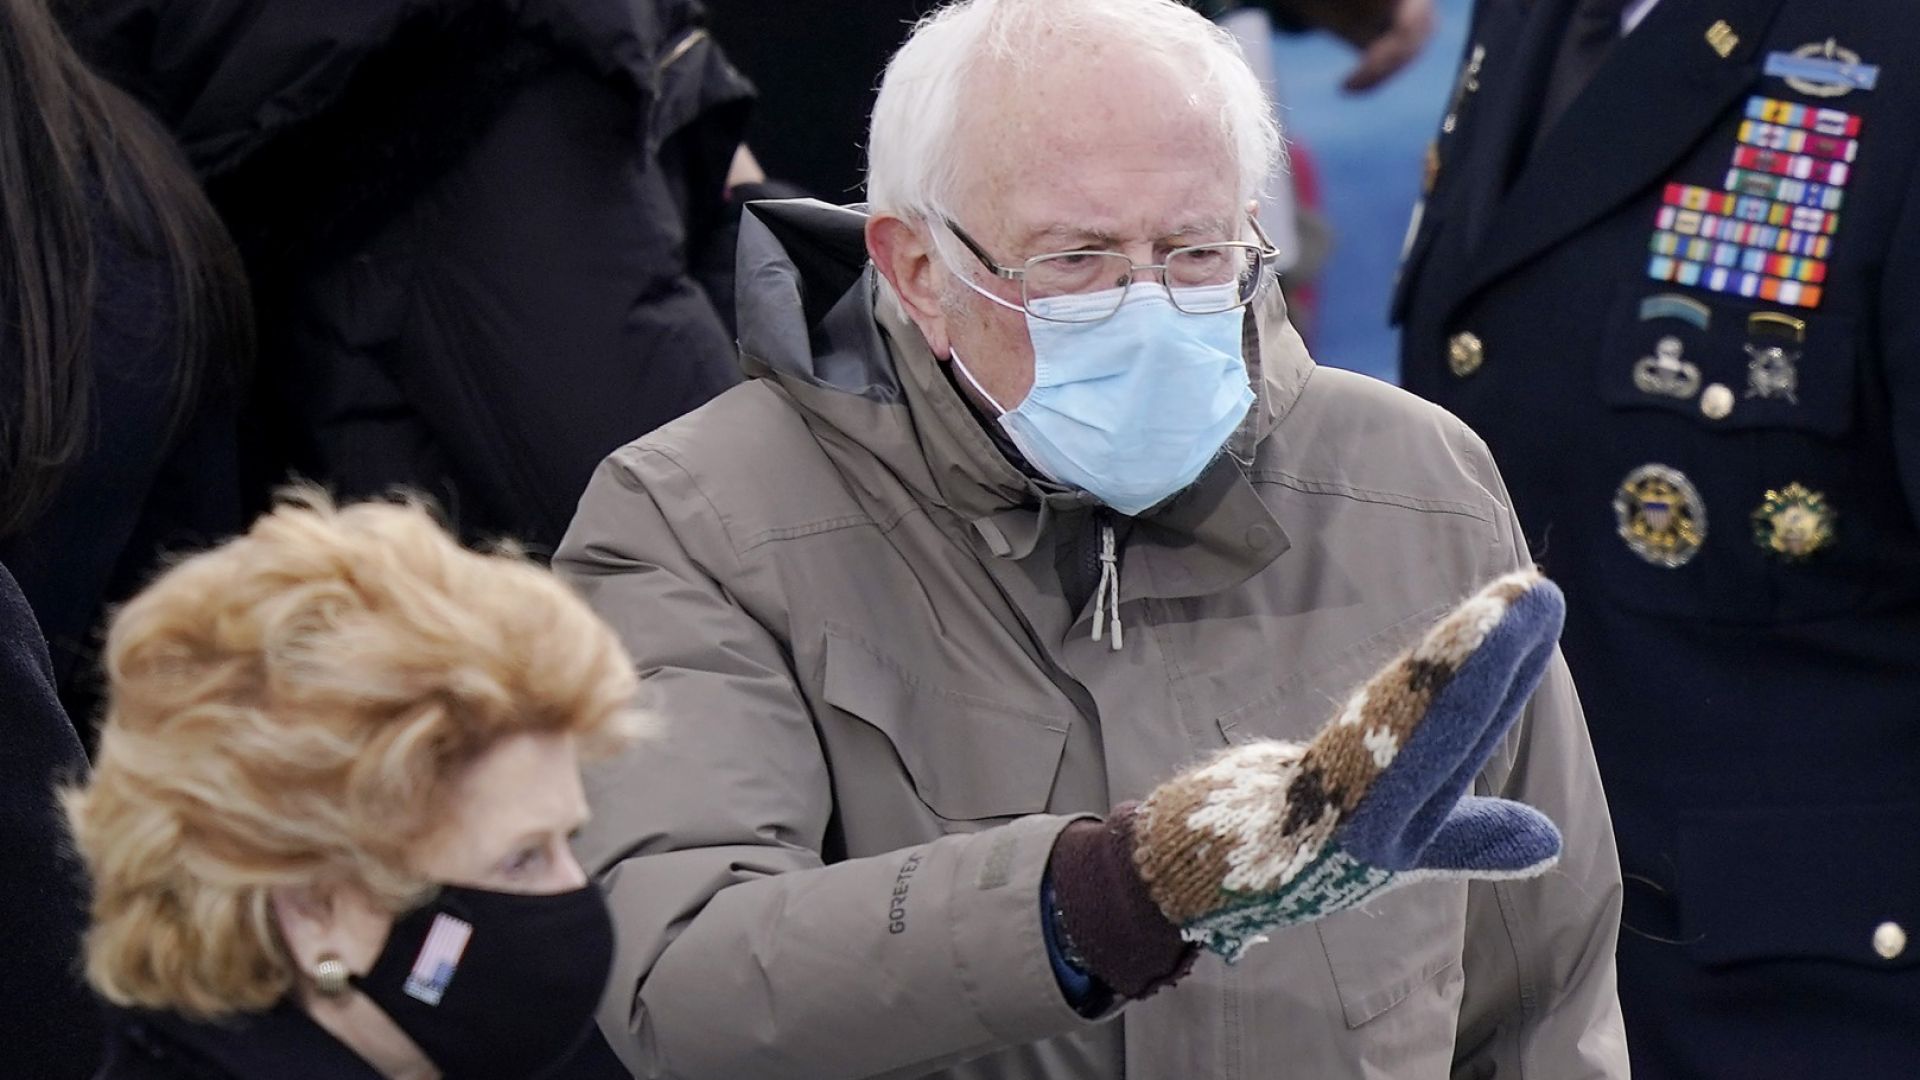 Бърни Сандърс събра за благотворителност $1,8 млн. със снимката с ръкавиците